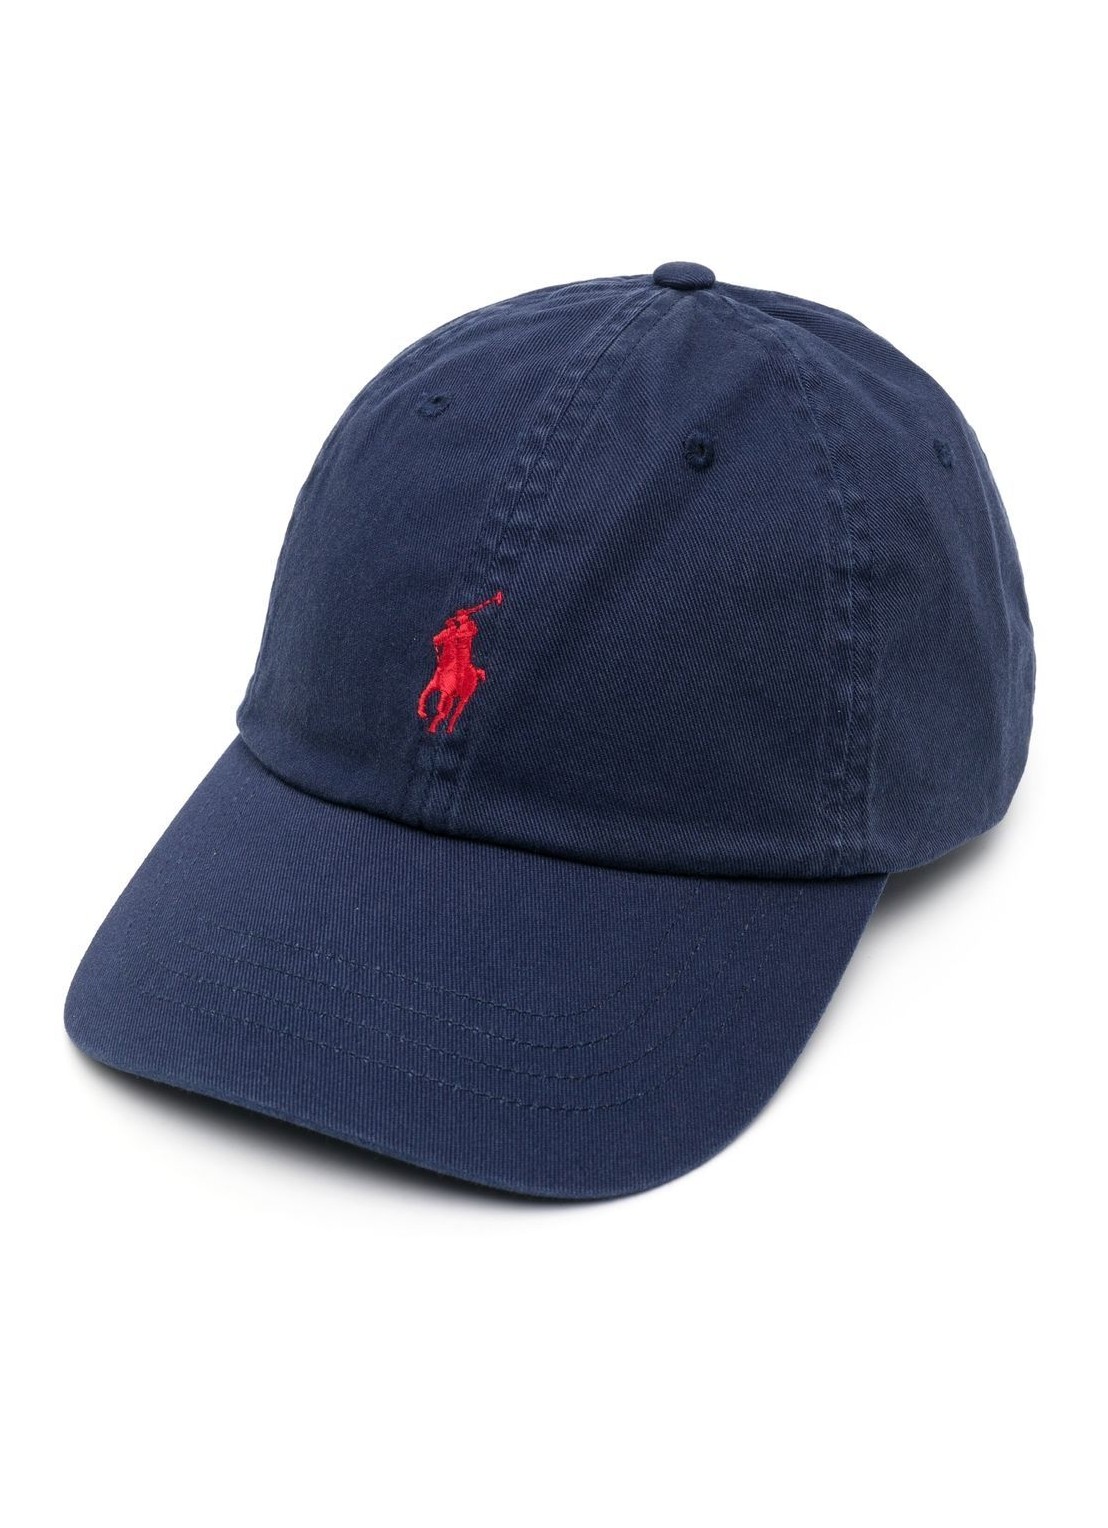 Gorras polo ralph lauren cap man sport cap-hat 710548524014 newport navy rl2000 red talla Azul
 